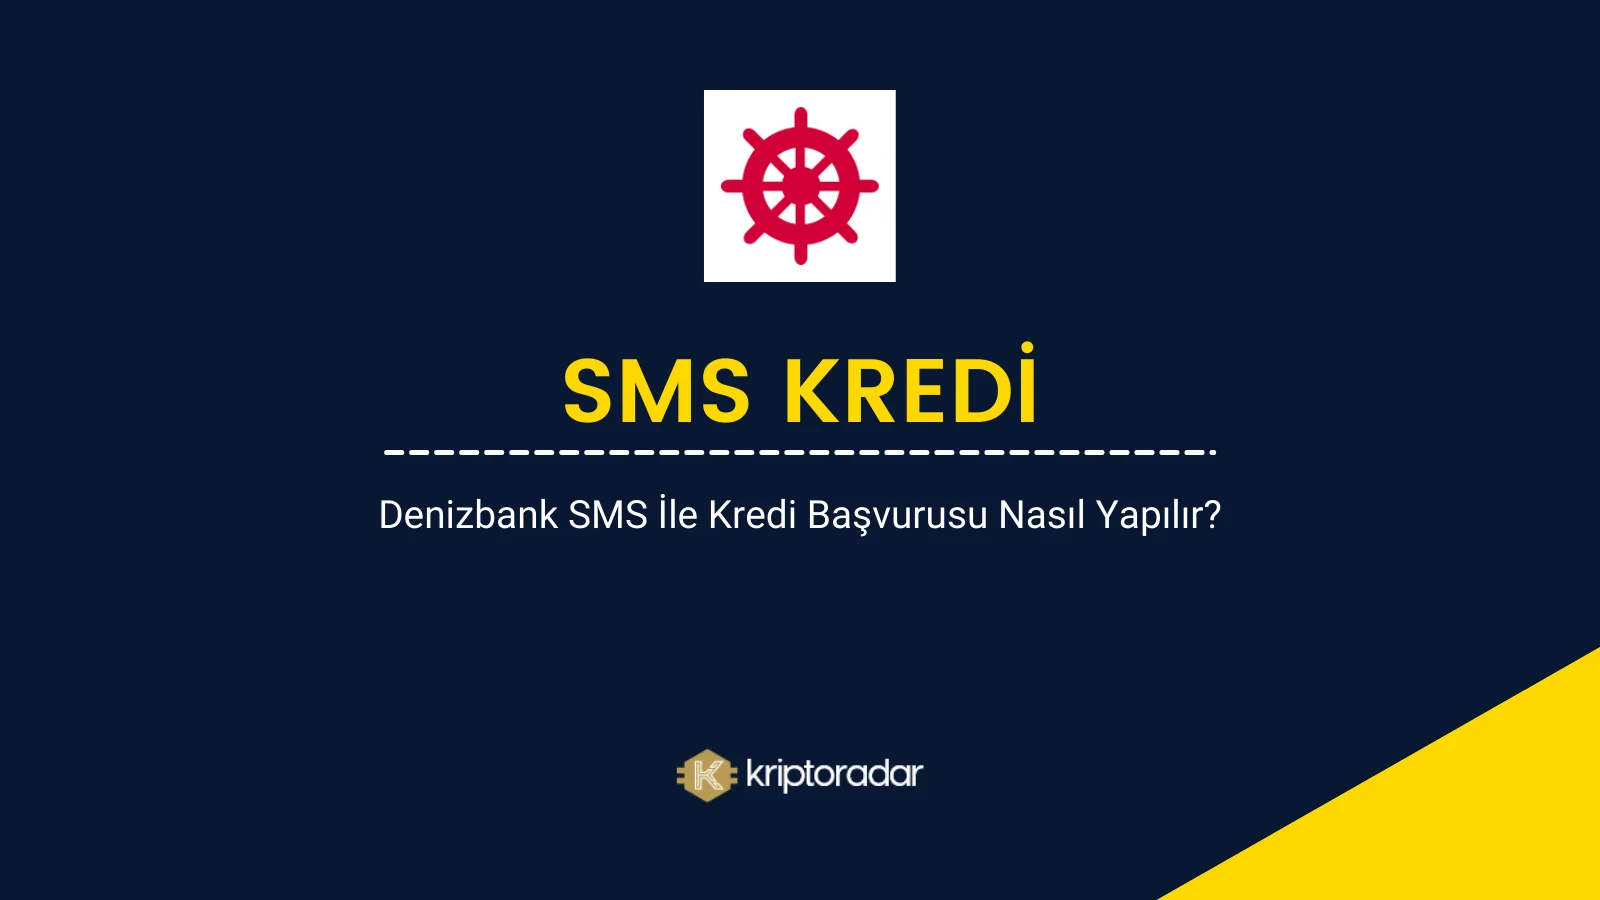 Denizbank SMS ile Kredi Başvurusu Nasıl Yapılır?